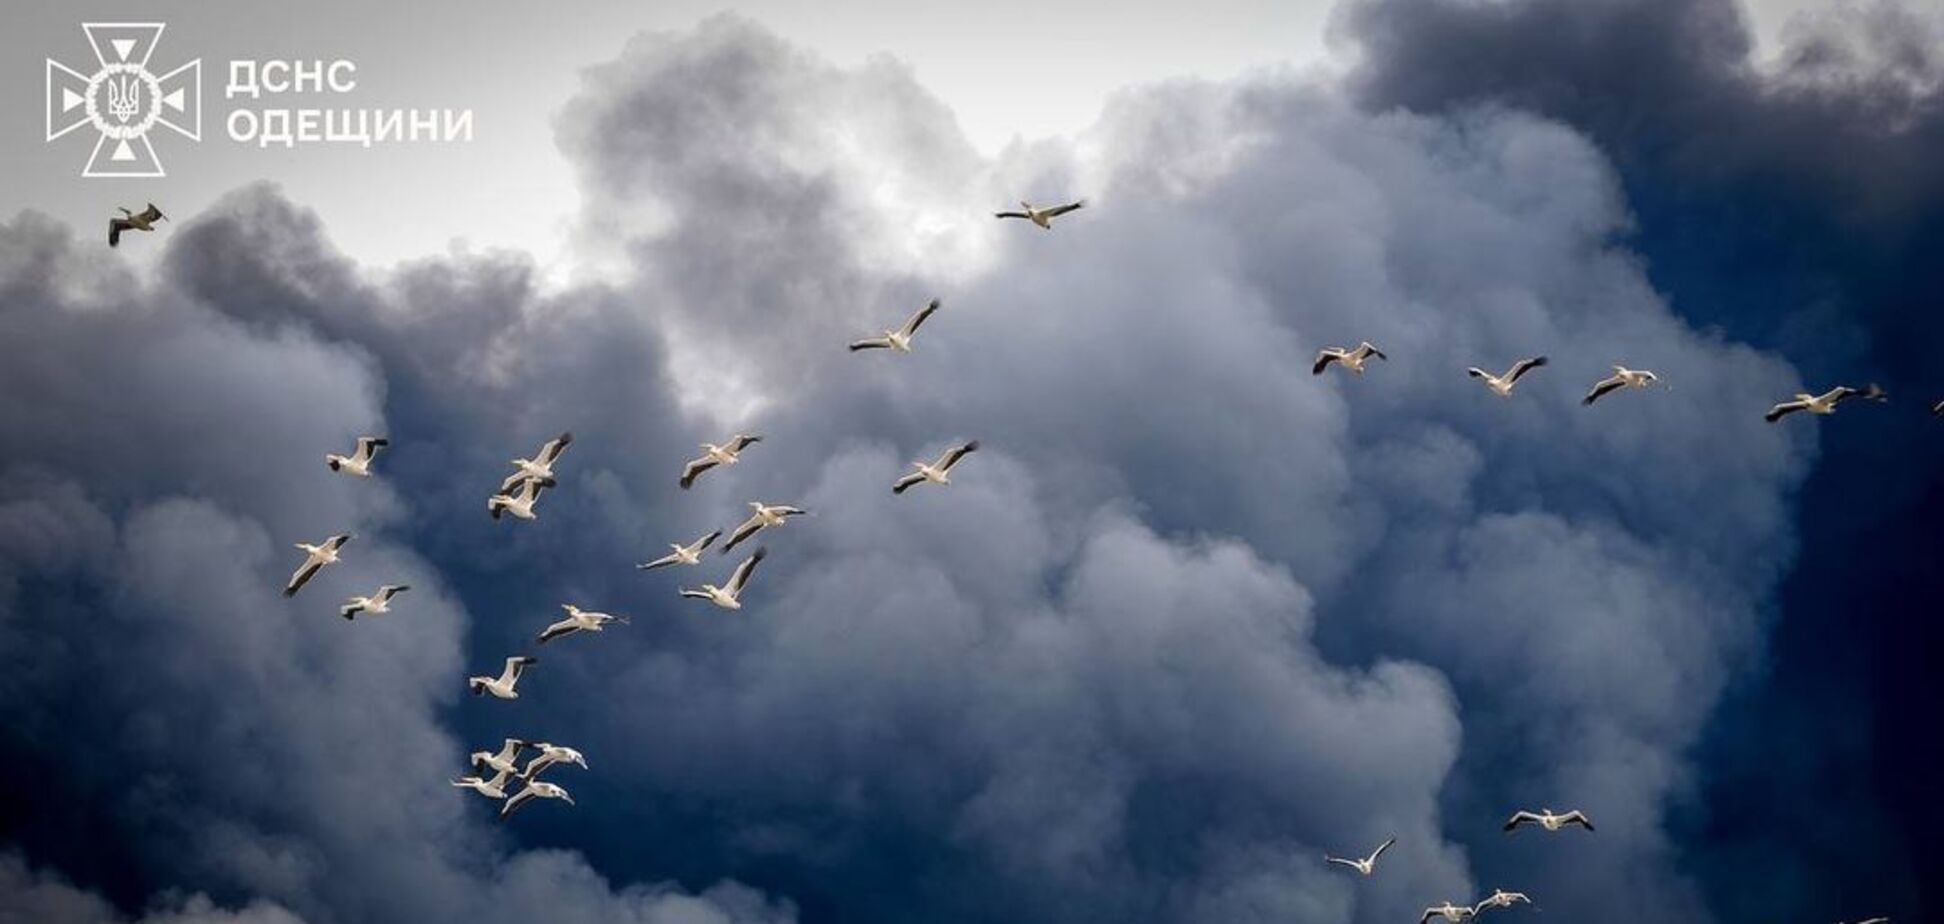 Природа також потерпає від війни. Фото пеліканів, які летять крізь дим від ракетного обстрілу Одещини, розчулило мережу